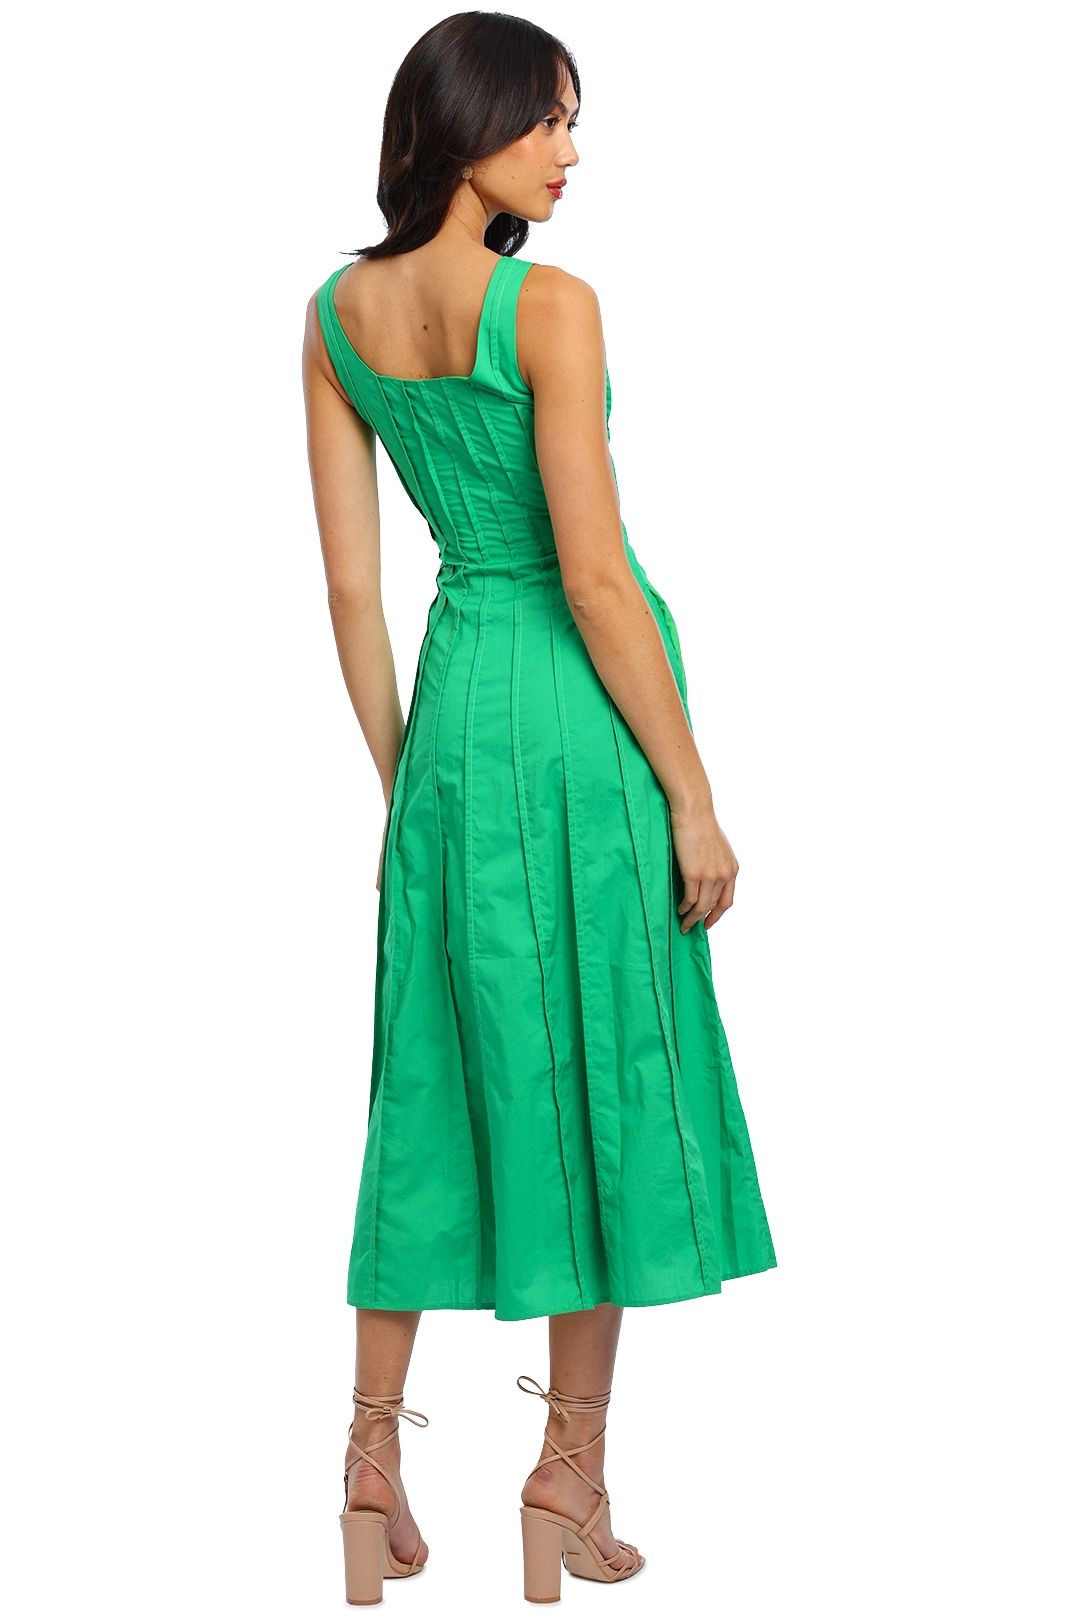 Nicholas Talullah Dress Emerald midi